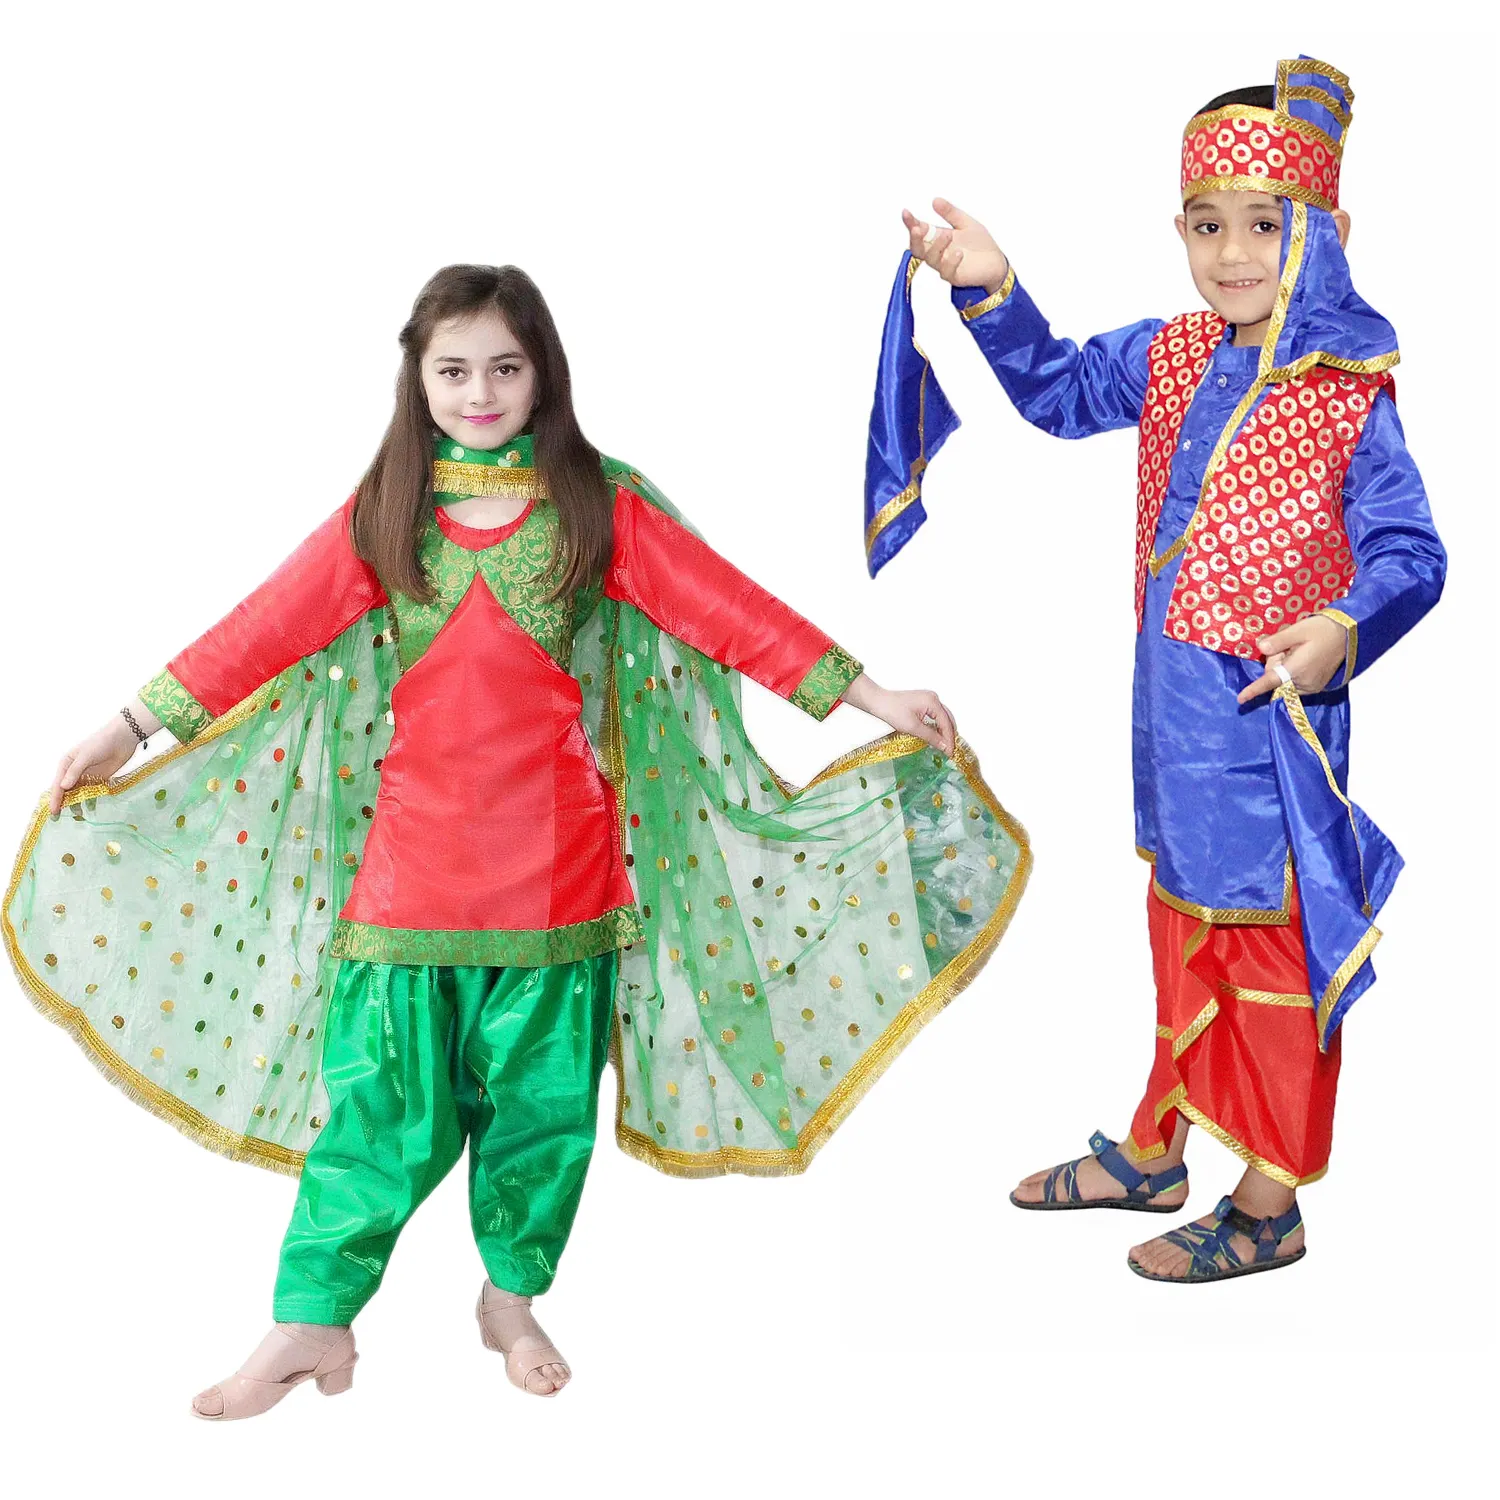 ملابس تقليدية للولايات الهندية للبيع بالجملة بكميات كبيرة ملابس أولاد وبنات من البنجاب للخدمة السنوية للمسارح والحفلات